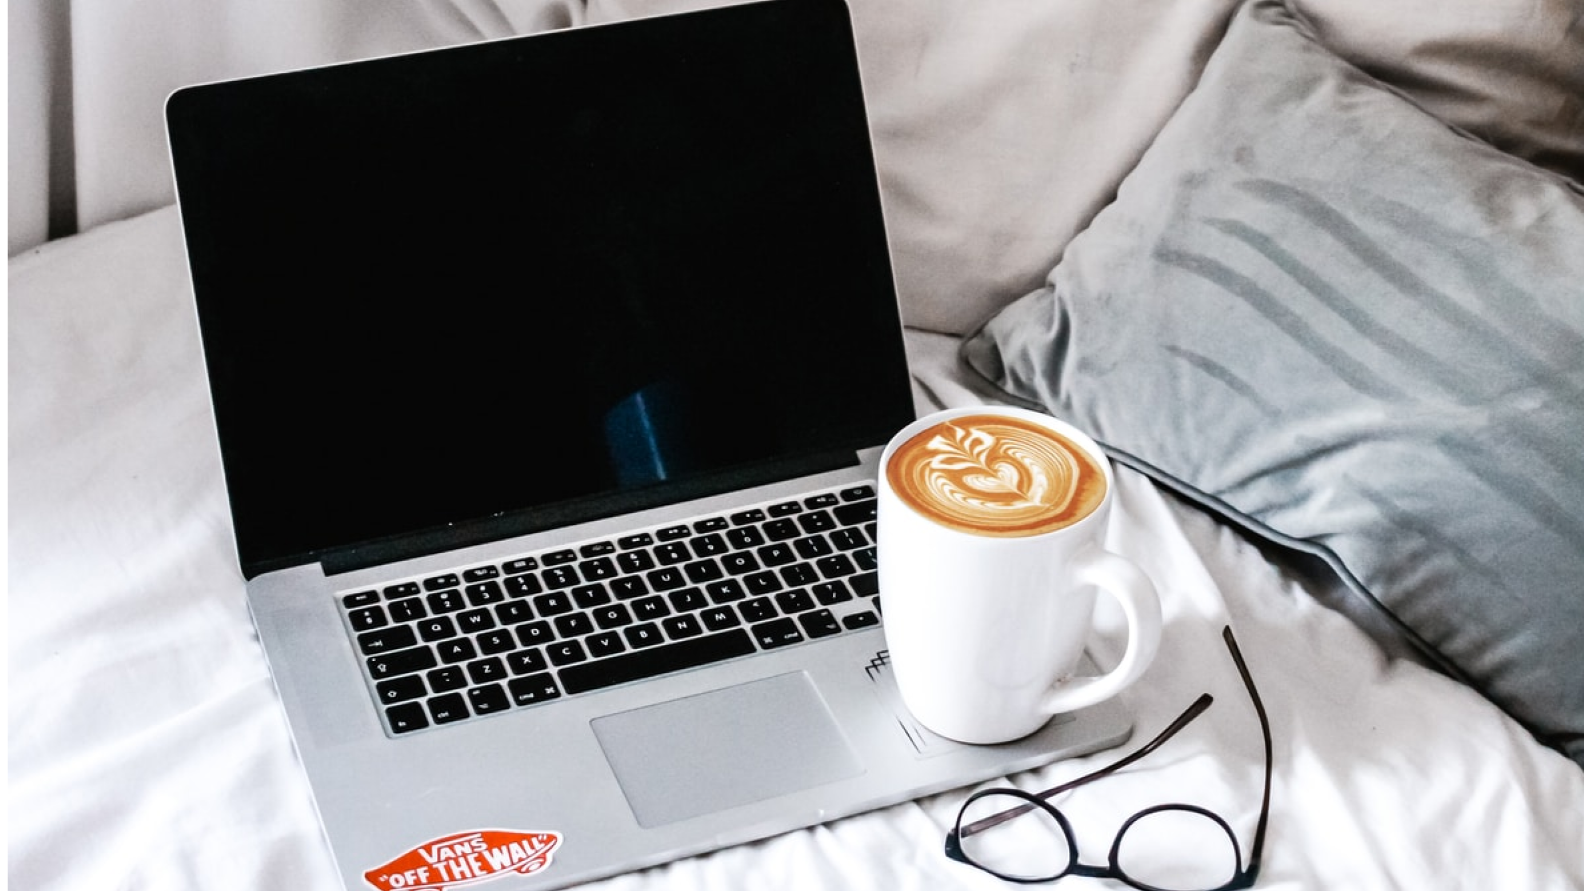 A laptop with a coffee mug